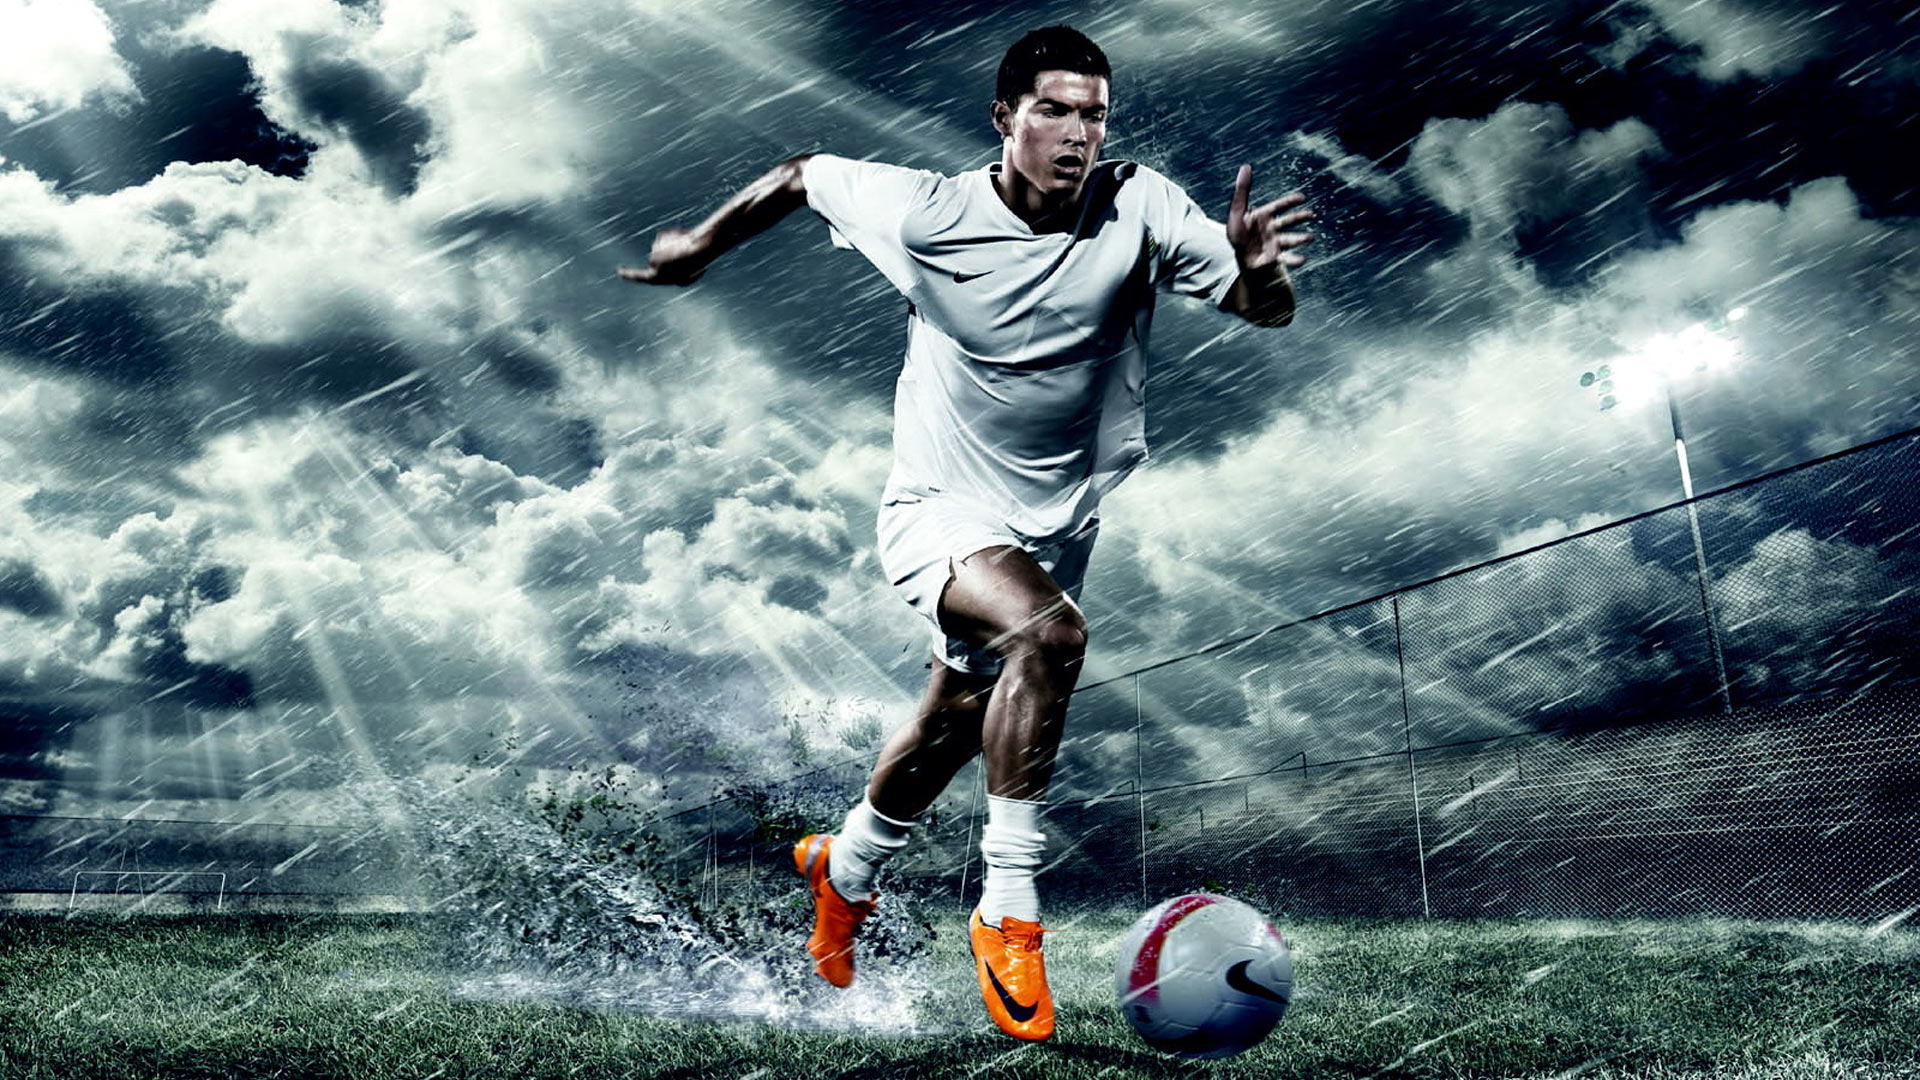 cr7 fondos de pantalla hd 1080p,jugador de fútbol,jugador de fútbol,fútbol americano,fútbol,balón de fútbol